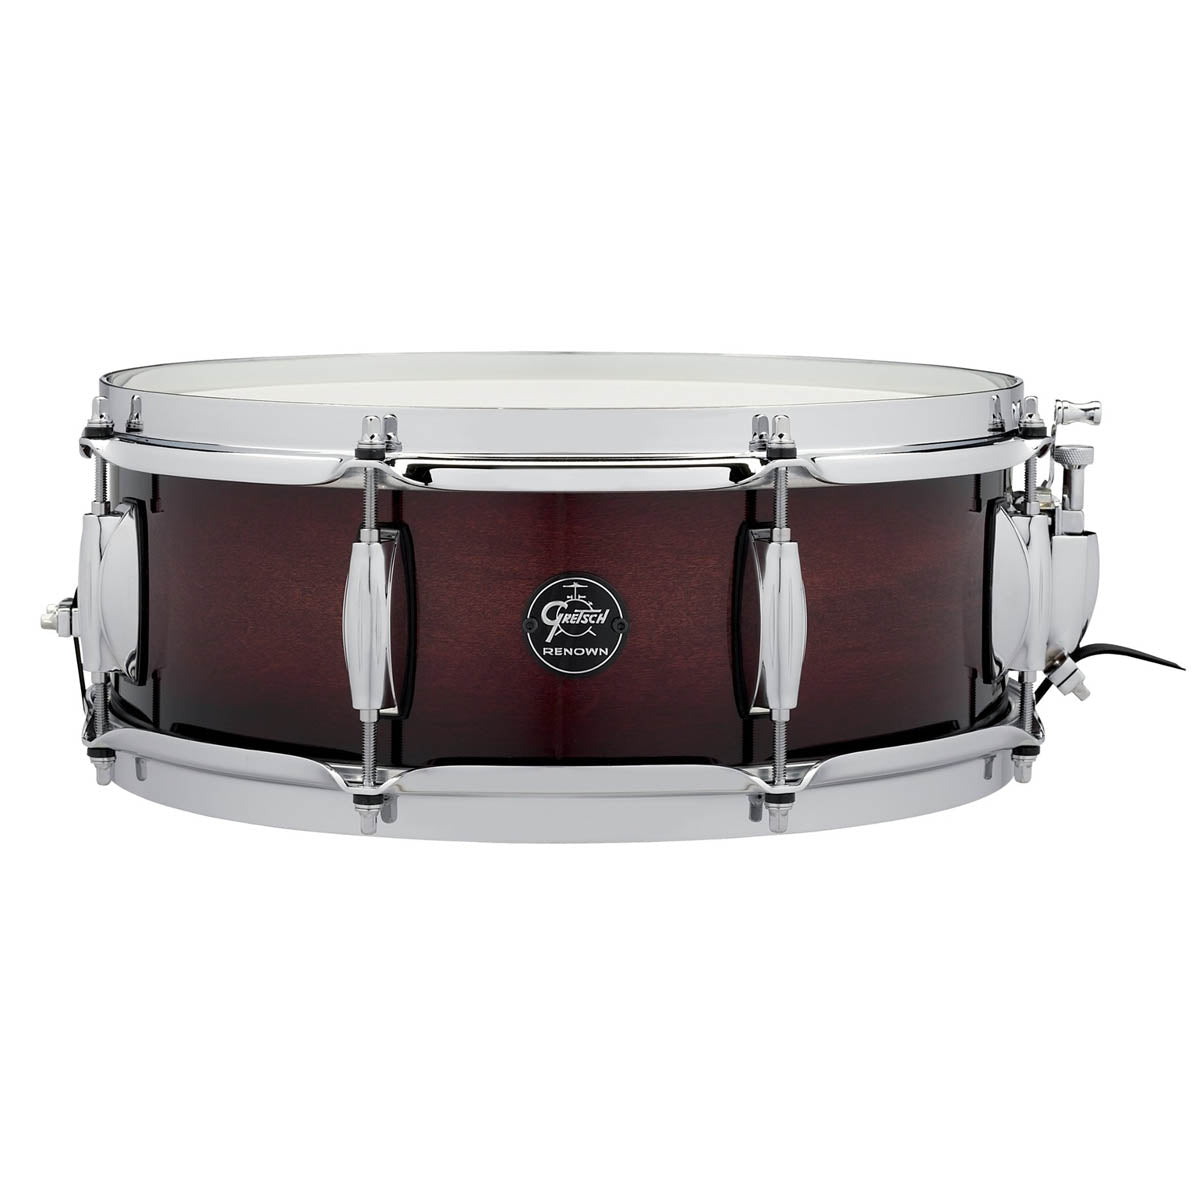 Gretsch Renown Maple 14"x5.5" Snare Drum in Cherry Burst